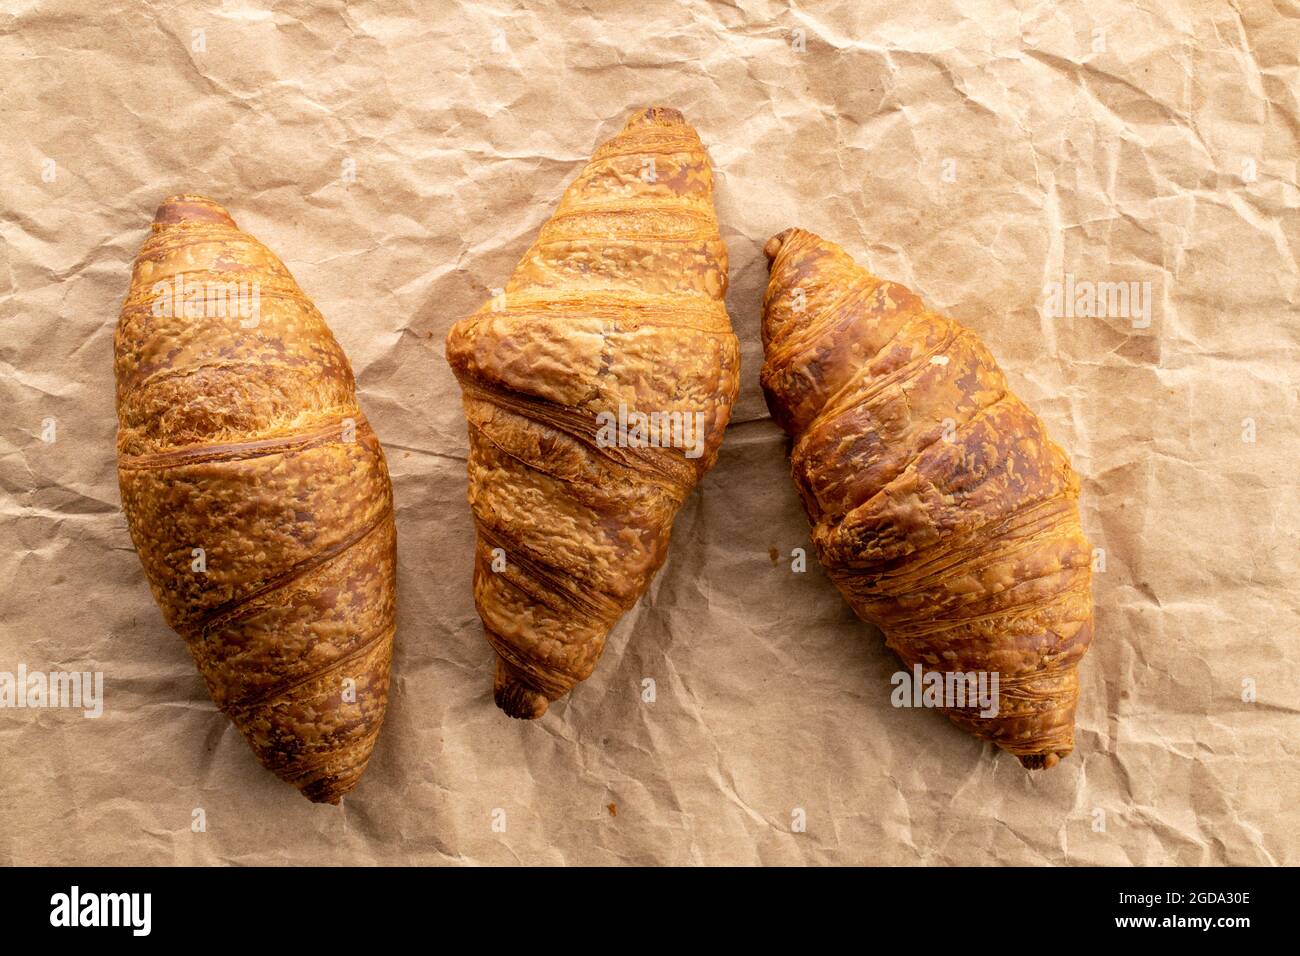 Trois délicieux croissants avec garniture au chocolat sur papier artisanal, gros plan, vue de dessus. Banque D'Images